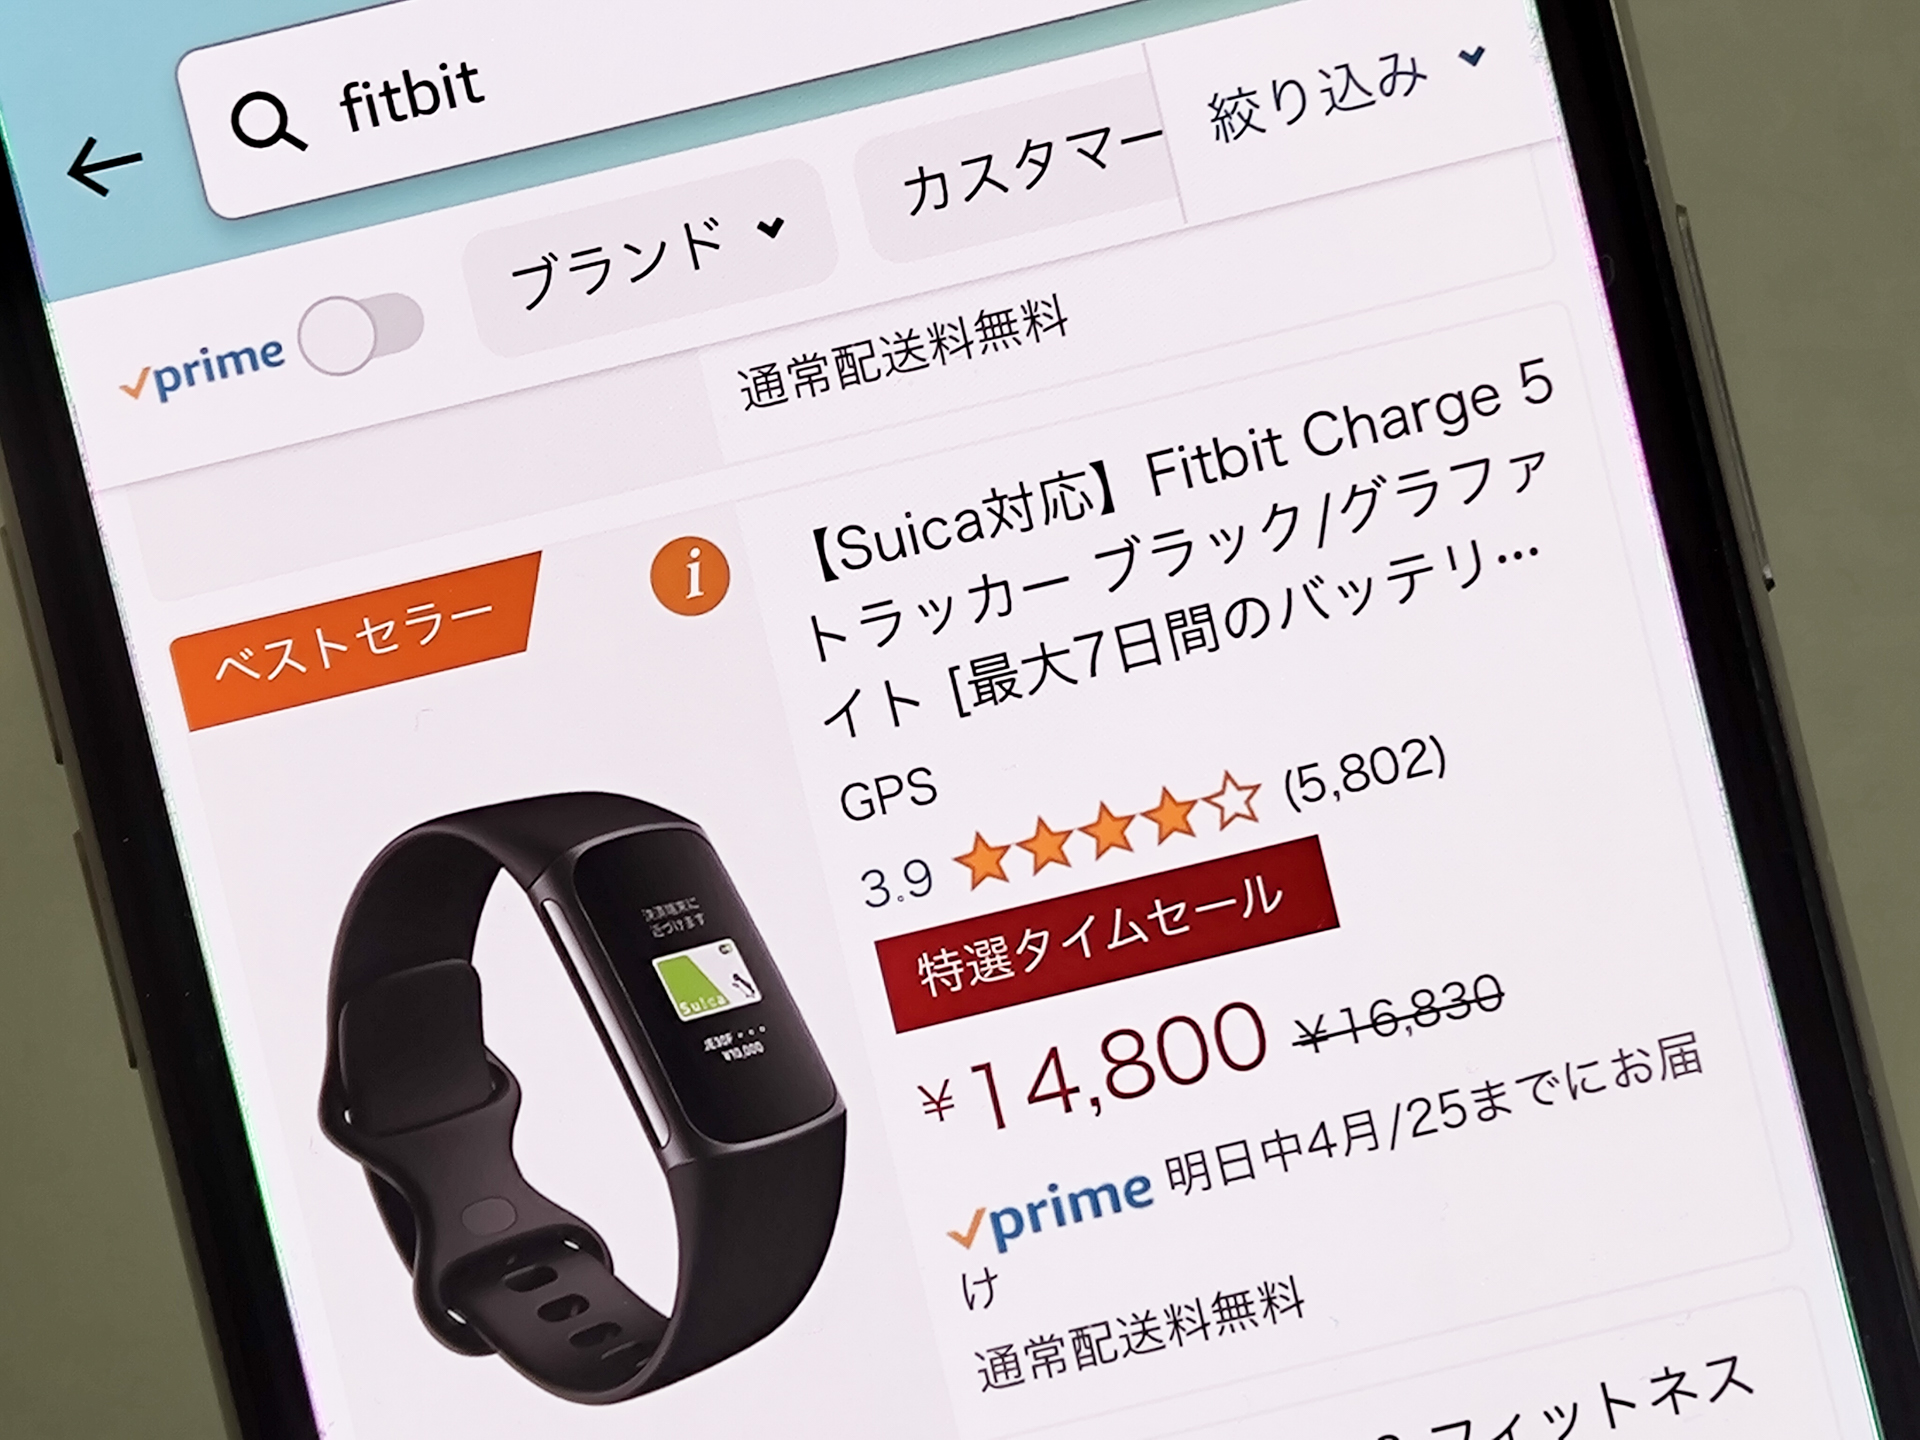 Suica対応のFitbit製品、Amazonのセールで特別価格に - ケータイ Watch